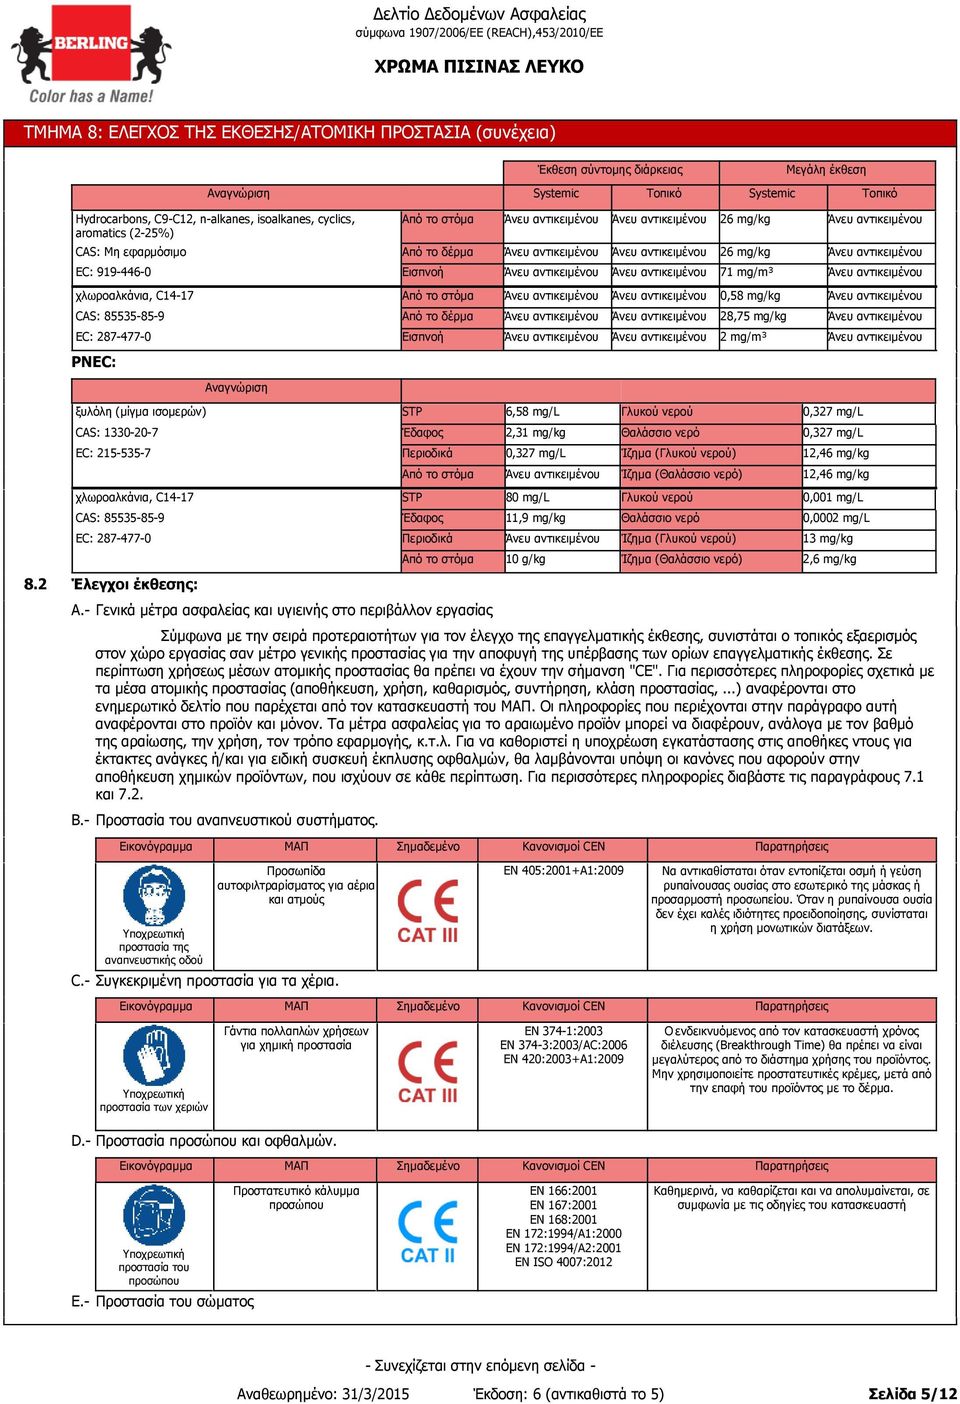 2 χλωροαλκάνια, C14-17 CAS: 85535-85-9 EC: 287-477-0 Έλεγχοι έκθεσης: STP Έδαφος Περιοδικά Έδαφος Περιοδικά A.- Γενικά μέτρα ασφαλείας και υγιεινής στο περιβάλλον εργασίας B.